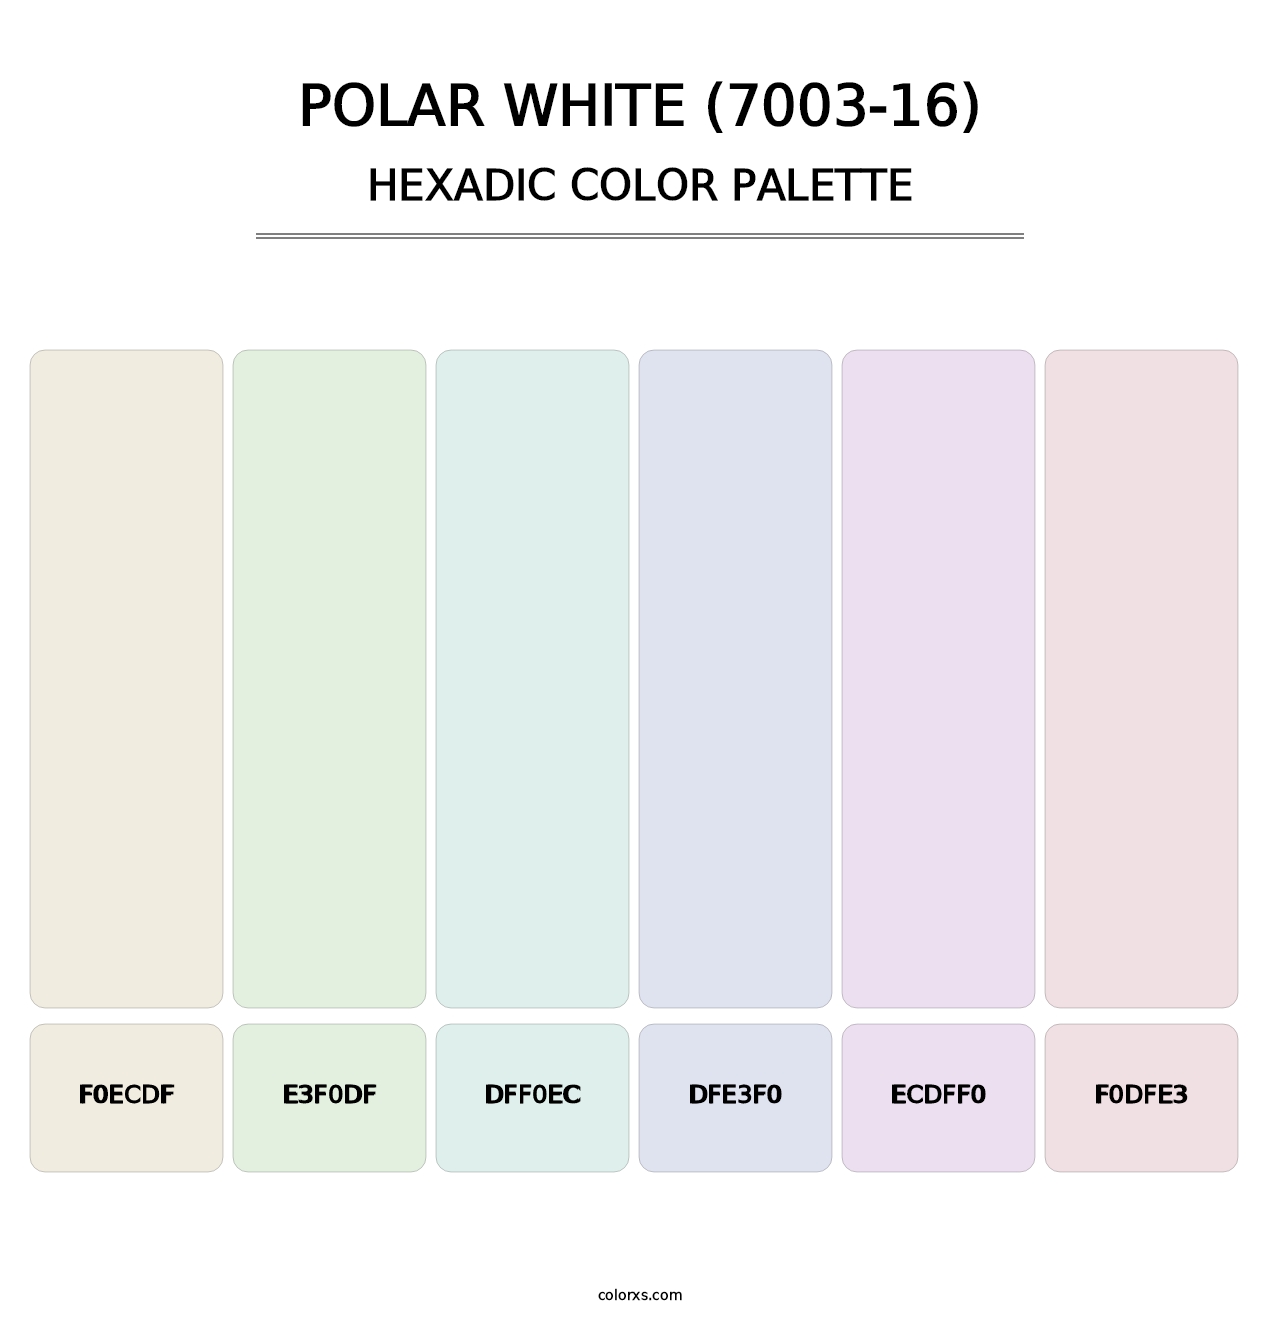 Polar White (7003-16) - Hexadic Color Palette